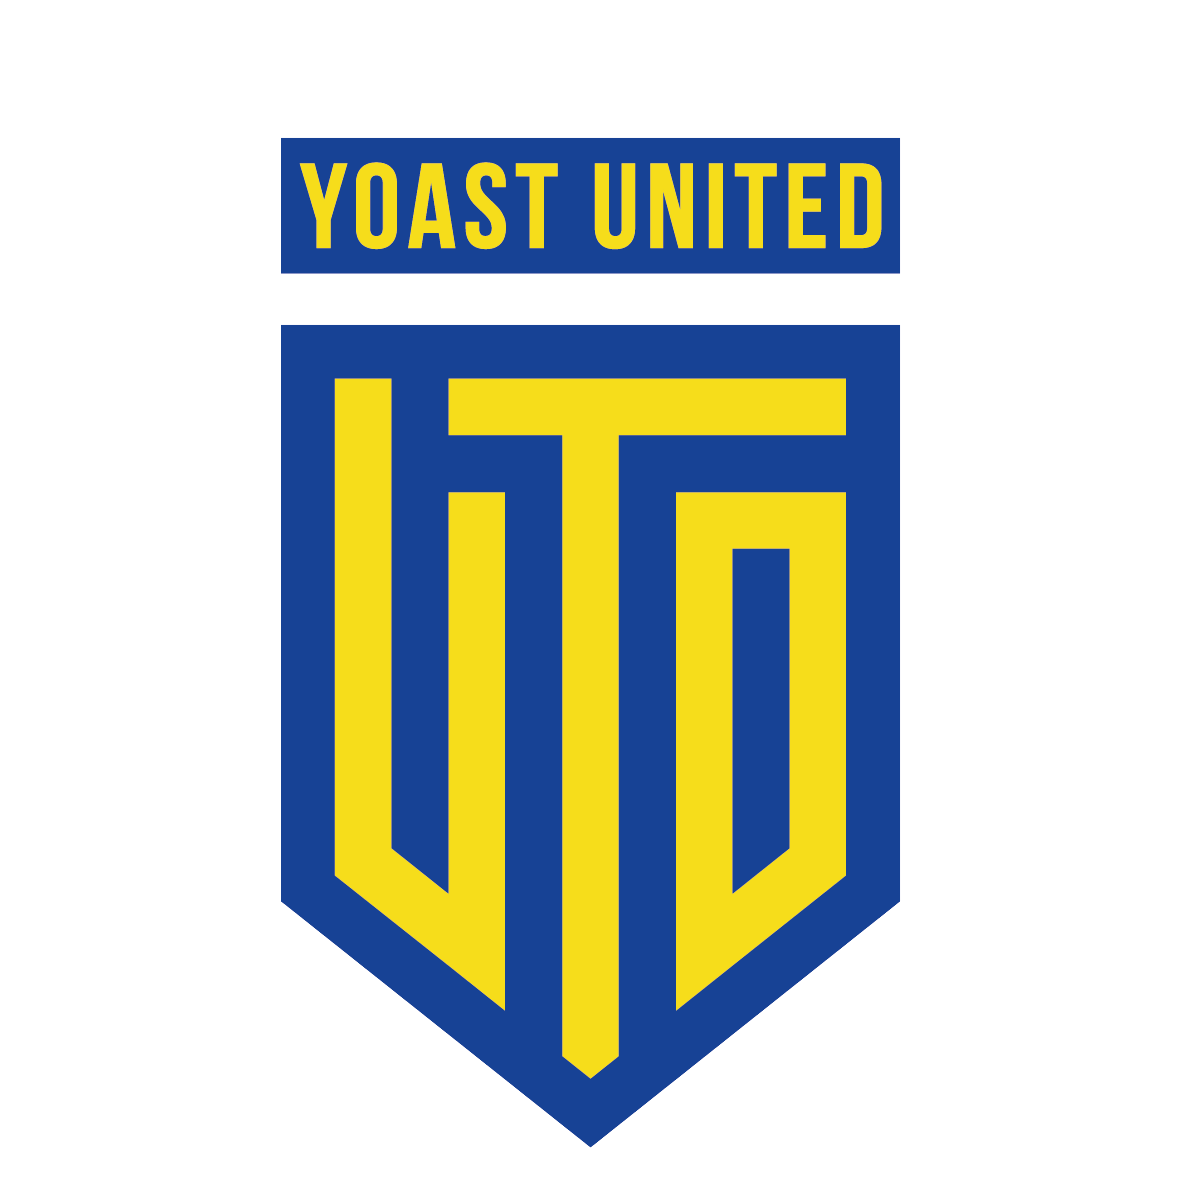 Yoast United